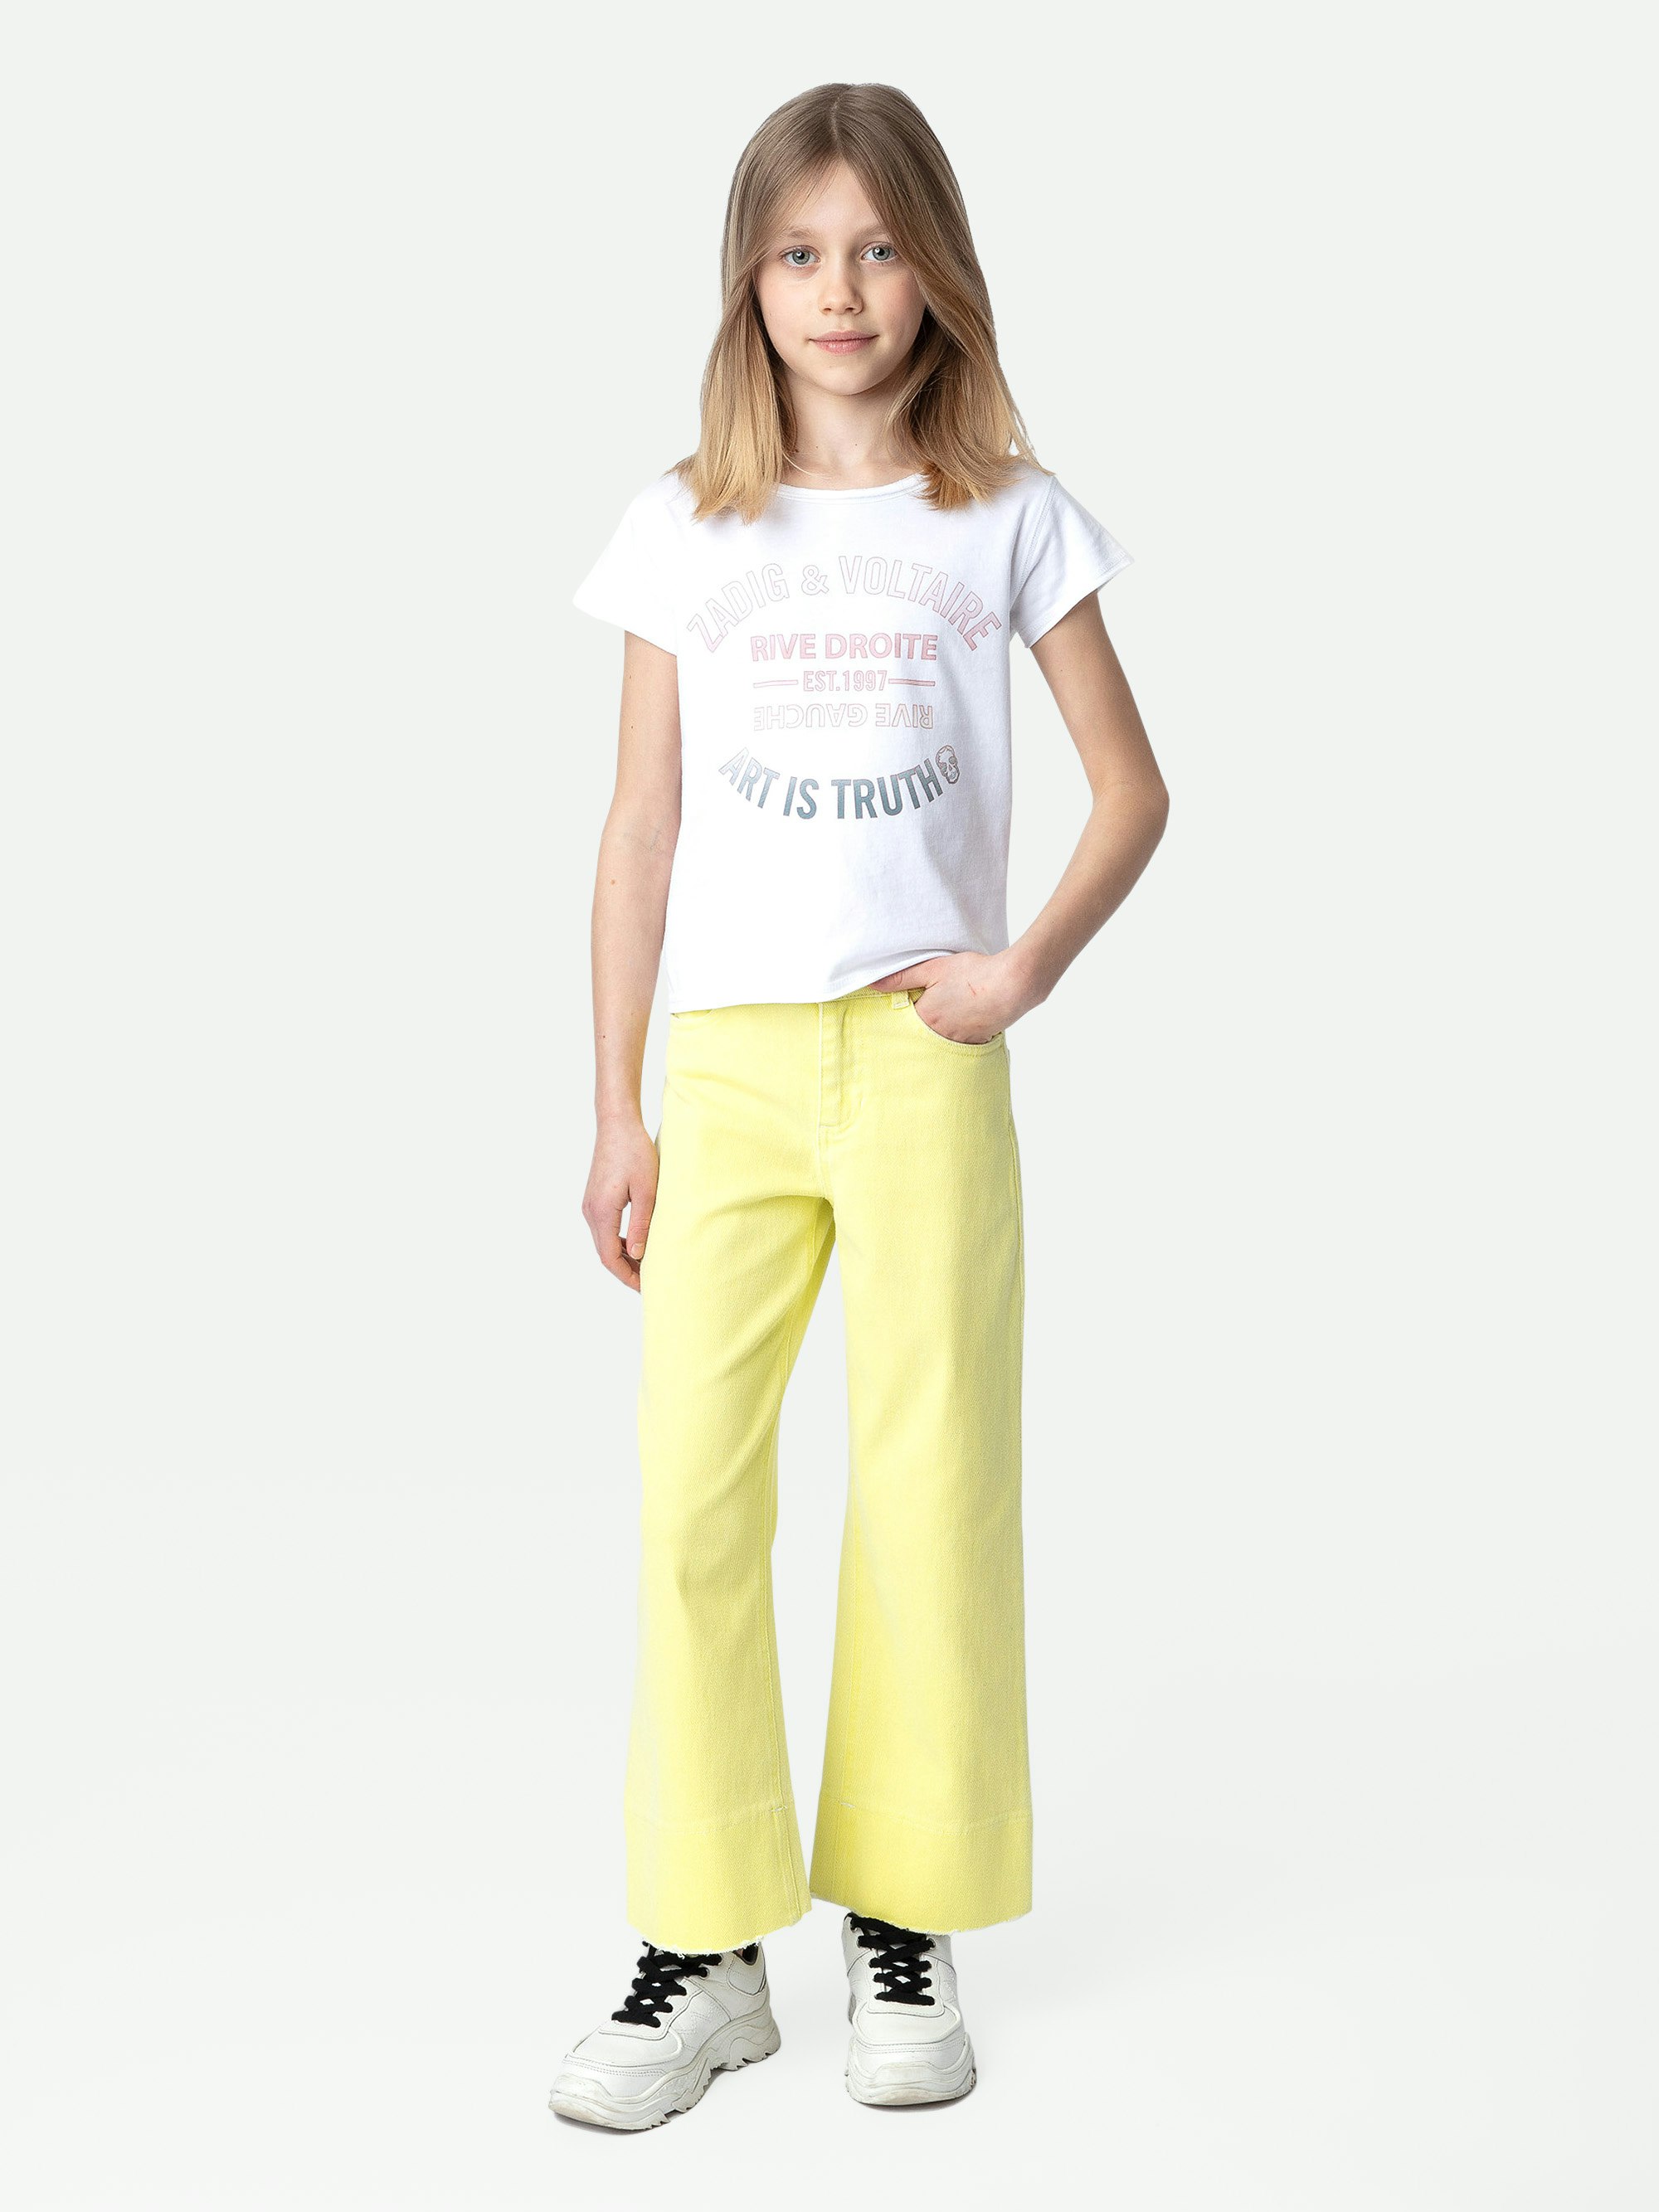 T-shirt Amber Fille - T-shirt fille à manches courtes en jersey coton blanc orné d'un blason.